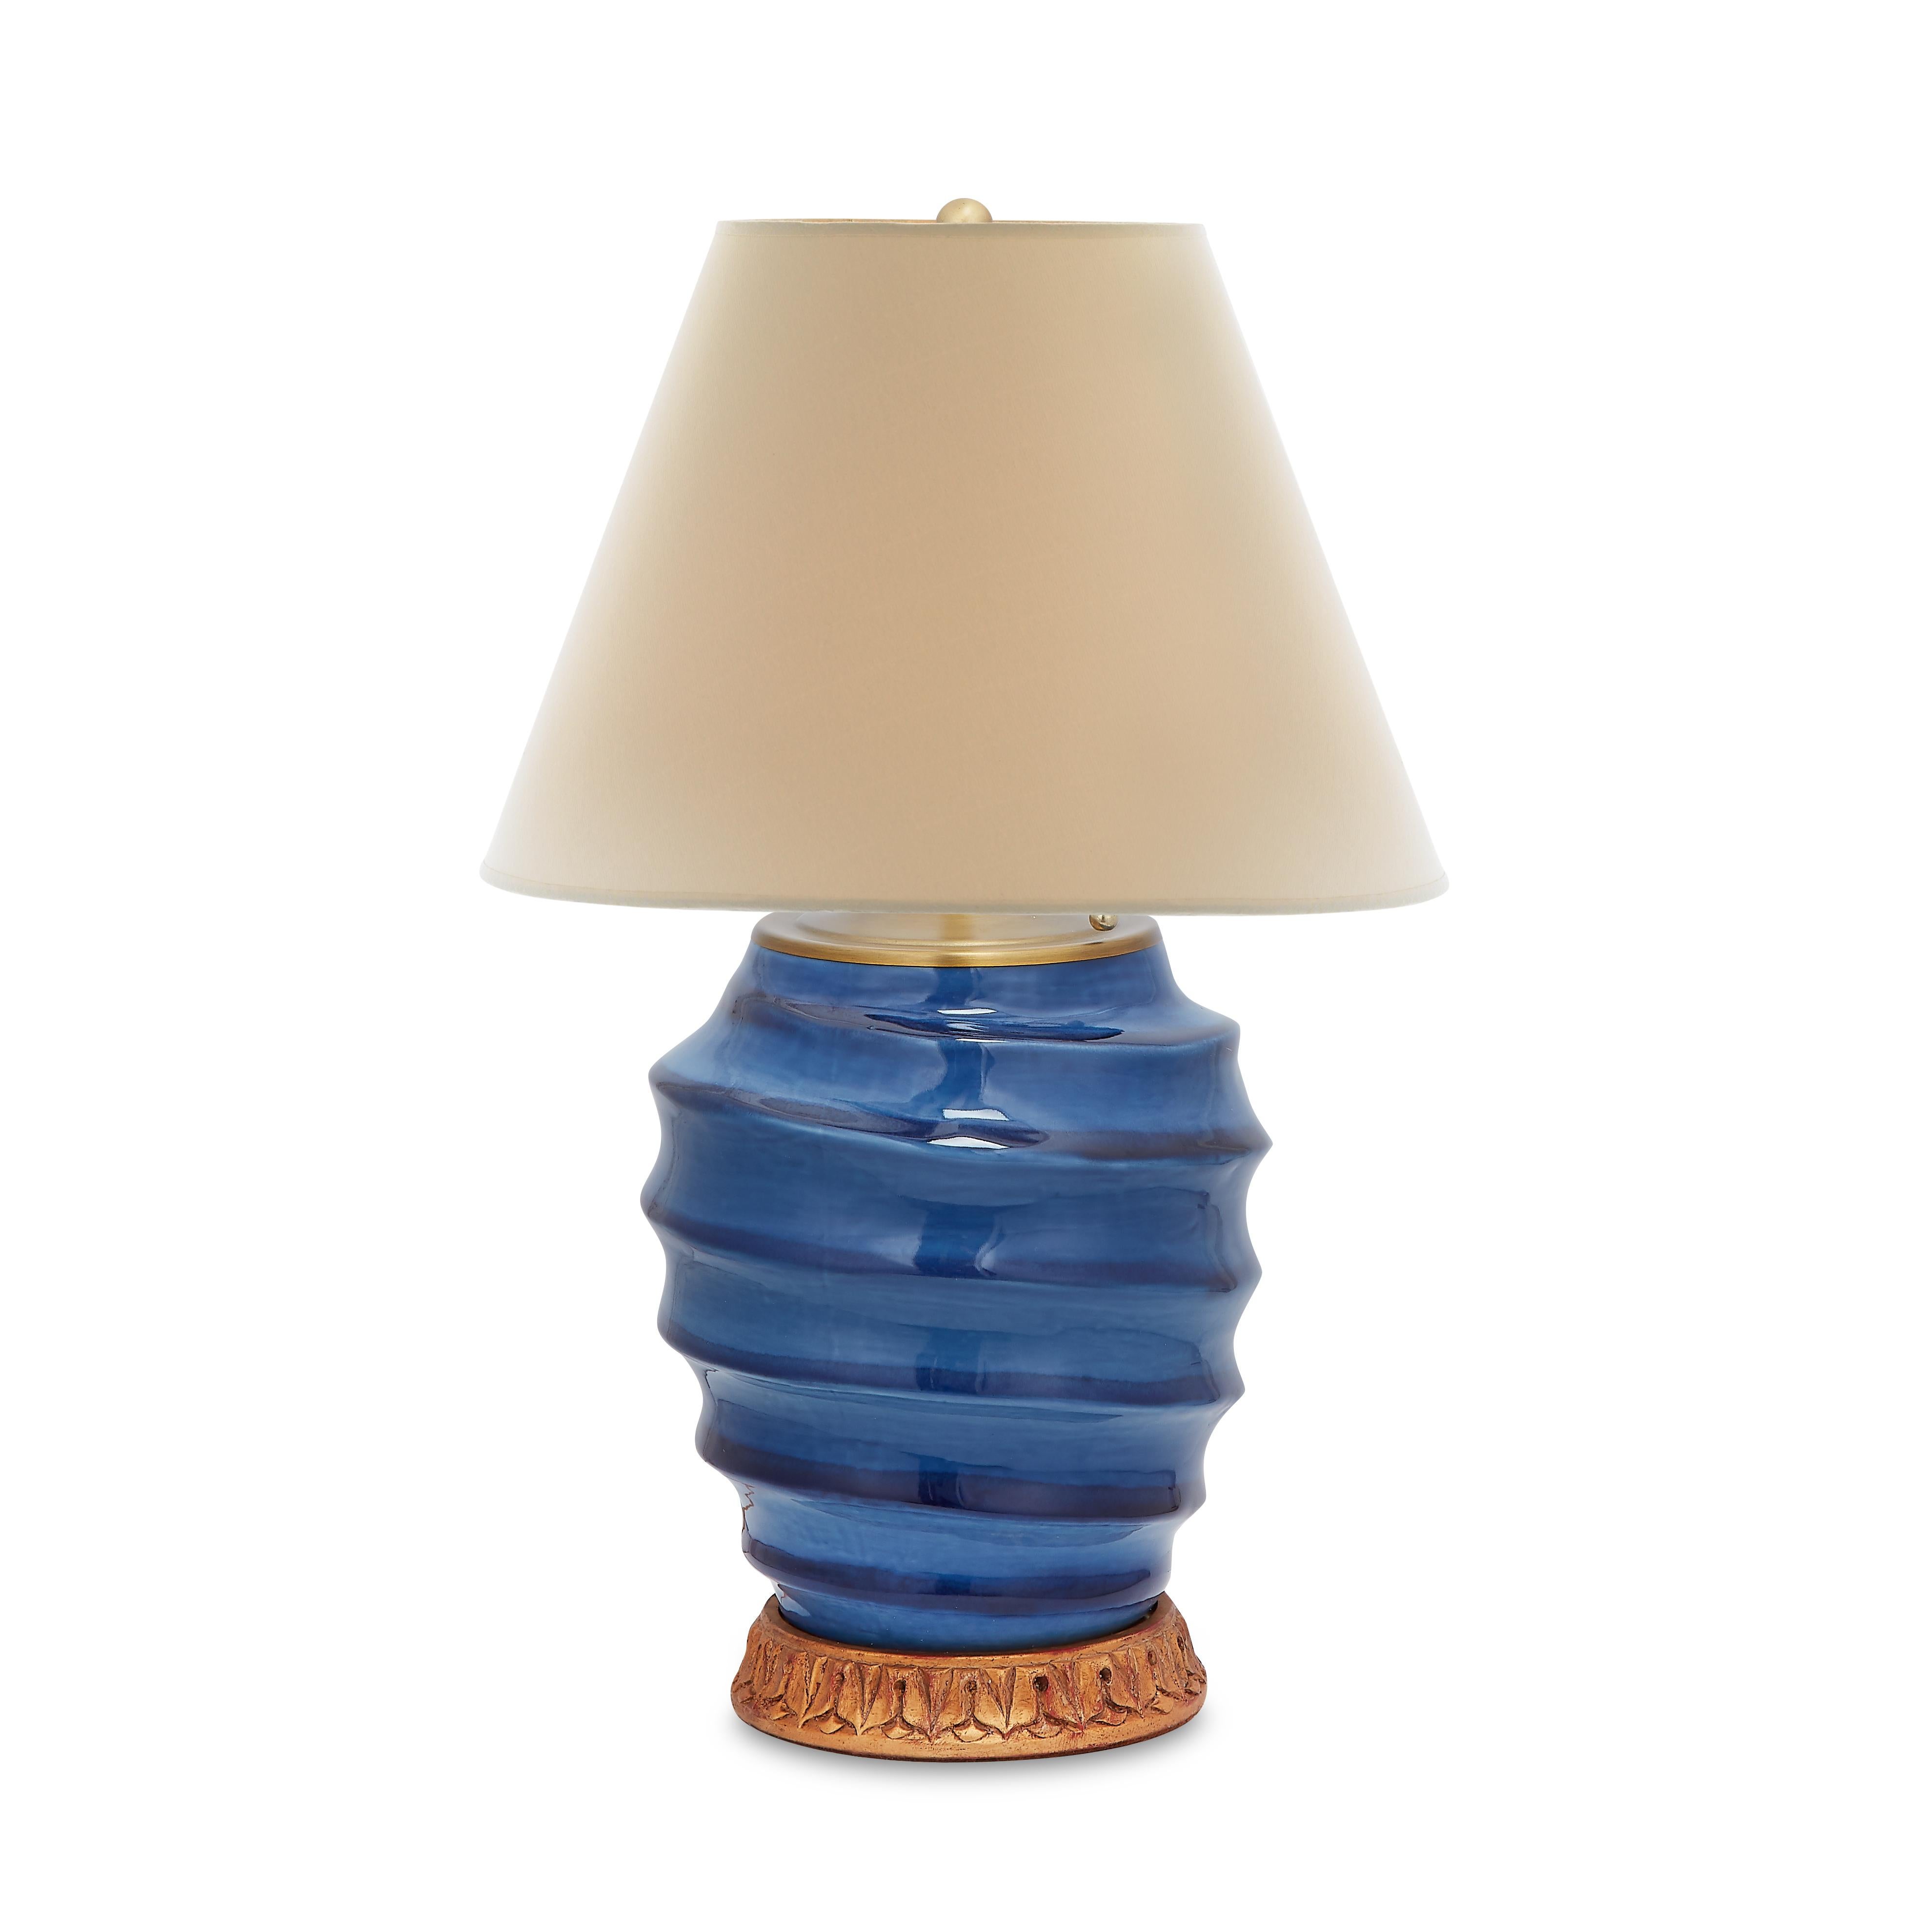 Eine auffällige geometrische Spirale hebt die dunklen und hellen Töne der fröhlichen atlantischen blauen Glasur hervor, die Namensgeberin dieser wohlproportionierten Lampe ist. Auf einem Sockel aus vergoldetem Gold.